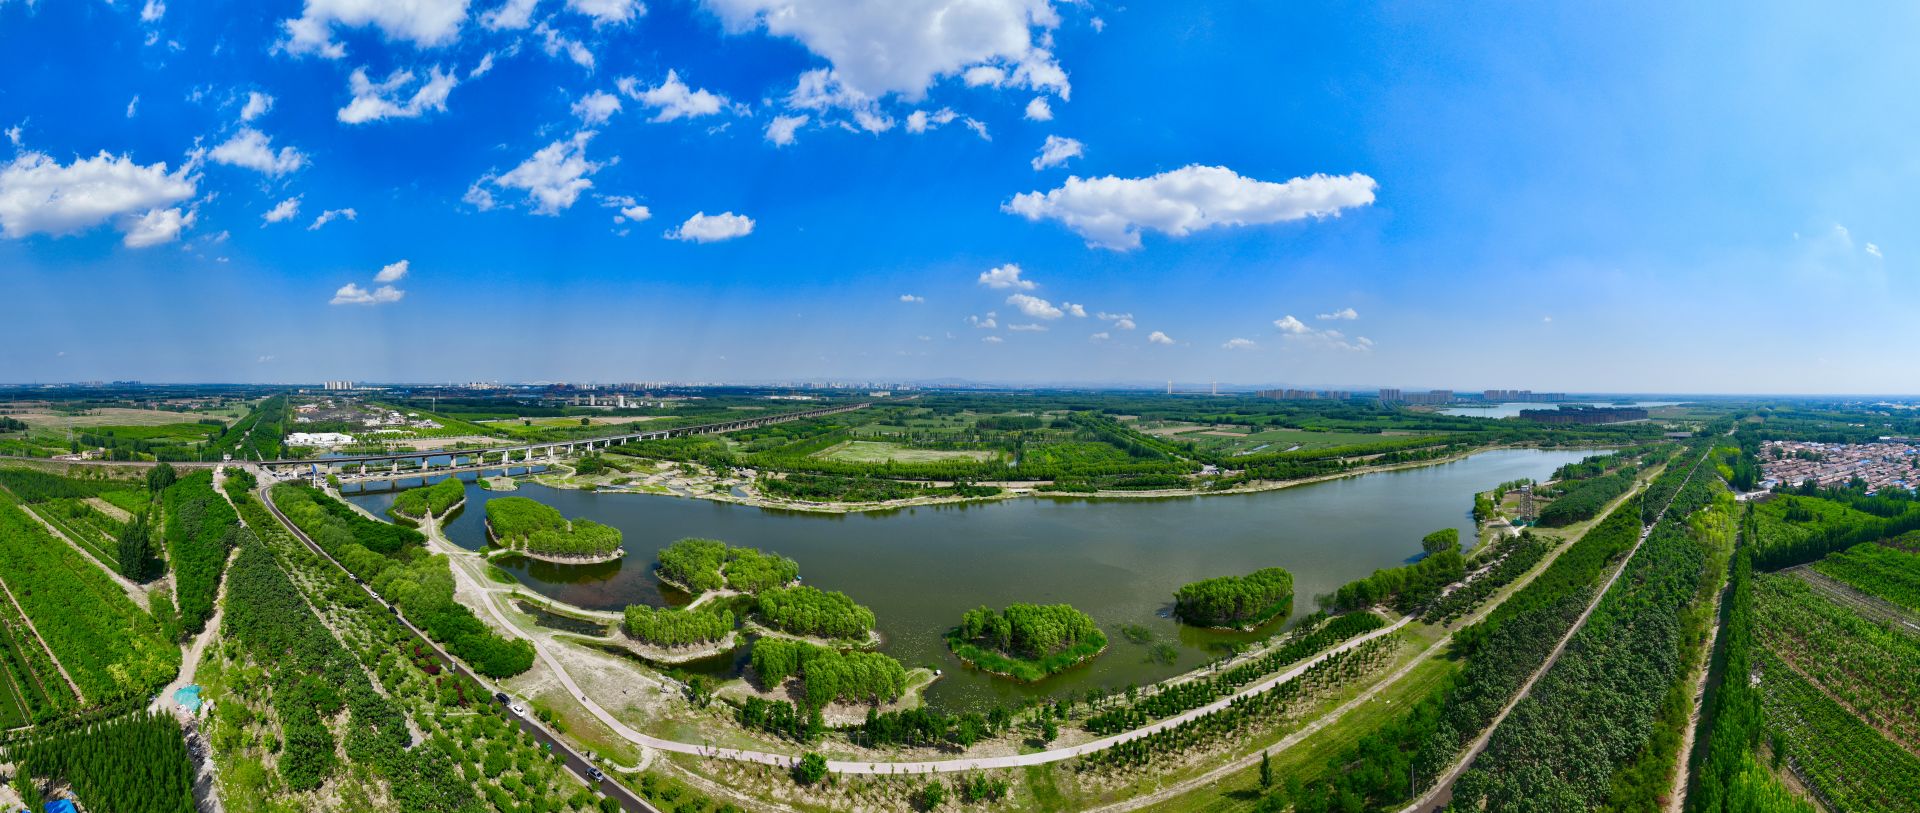 齐河黄河国际生态城旅游度假区成功晋升国家级